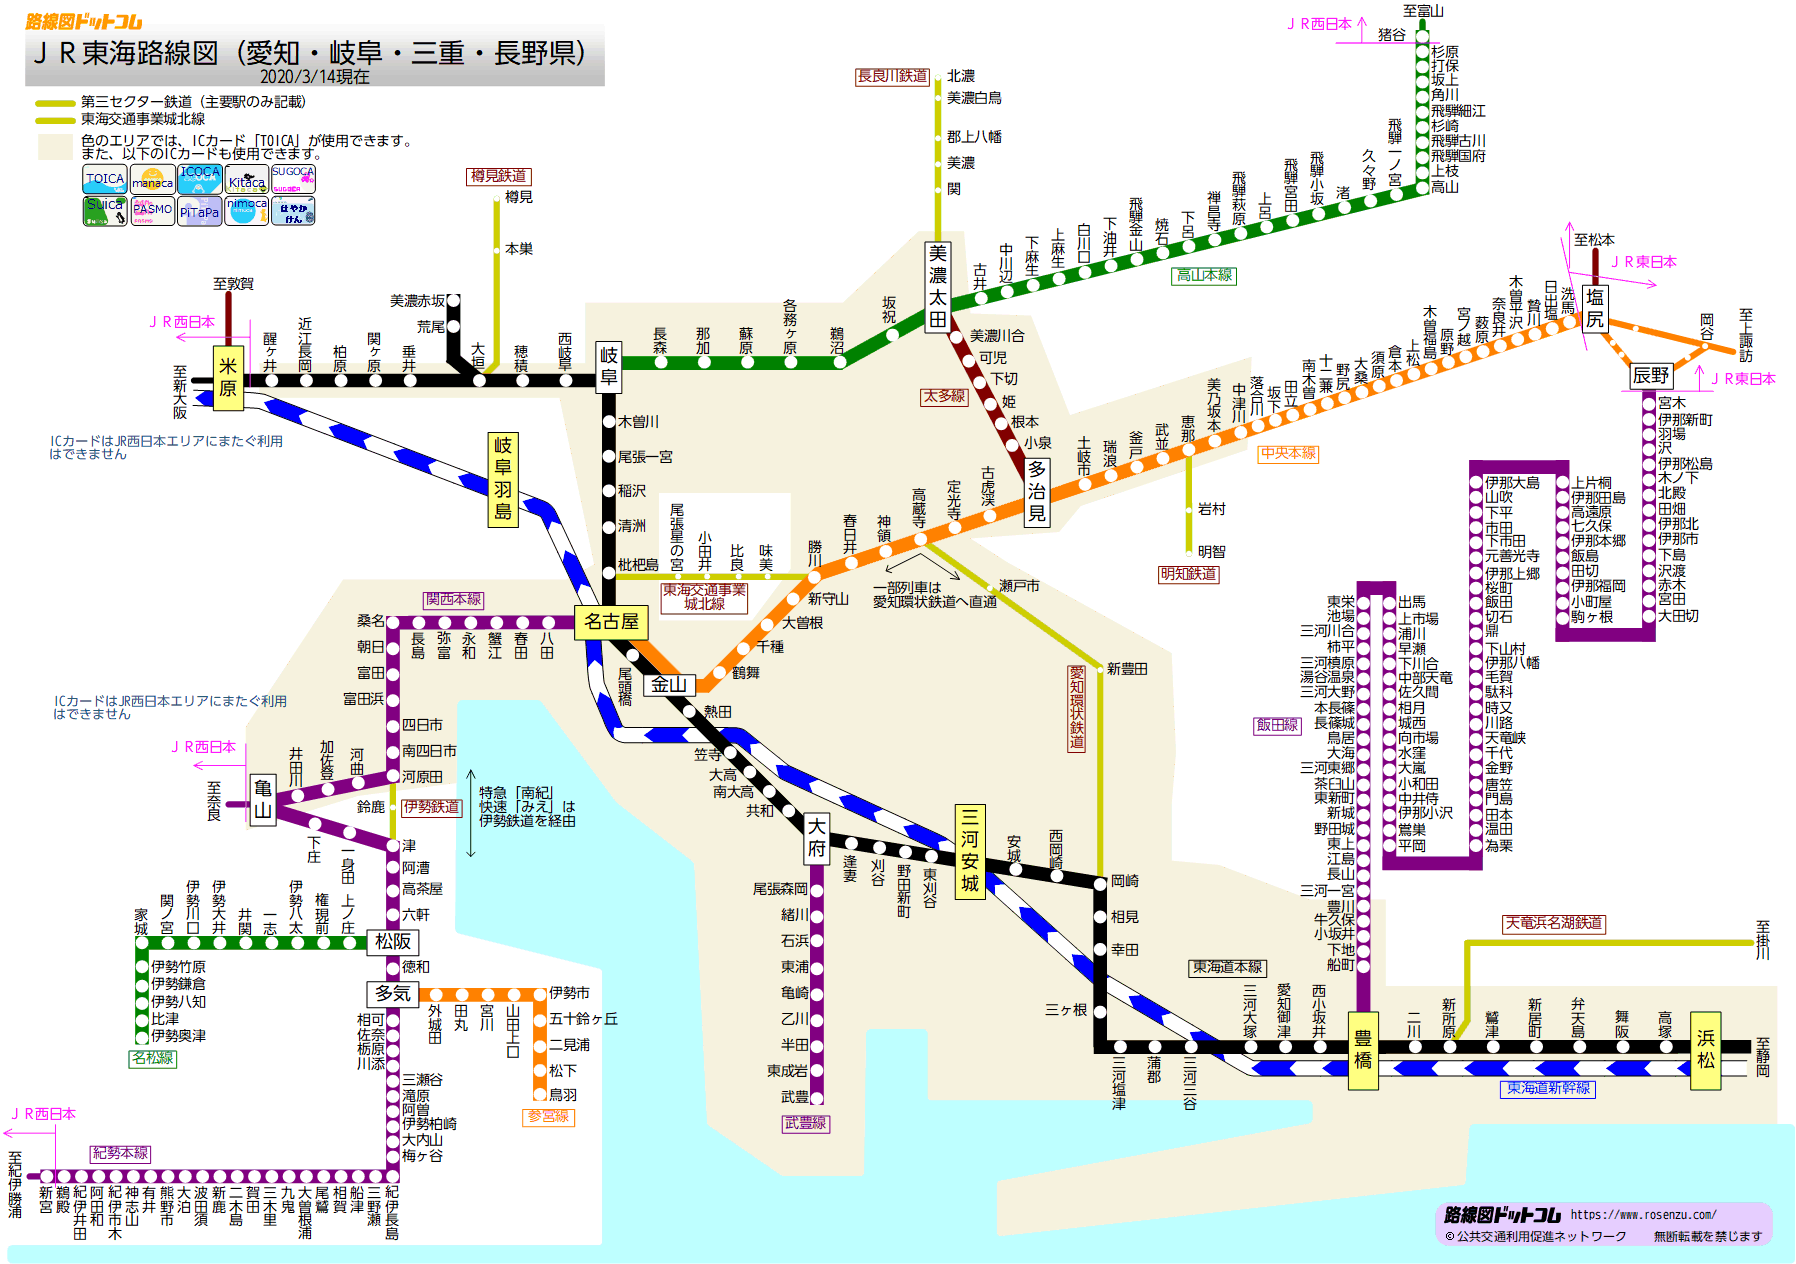 路線図ドットコム-JR東海 在来線路線図(愛知・岐阜・三重・長野)